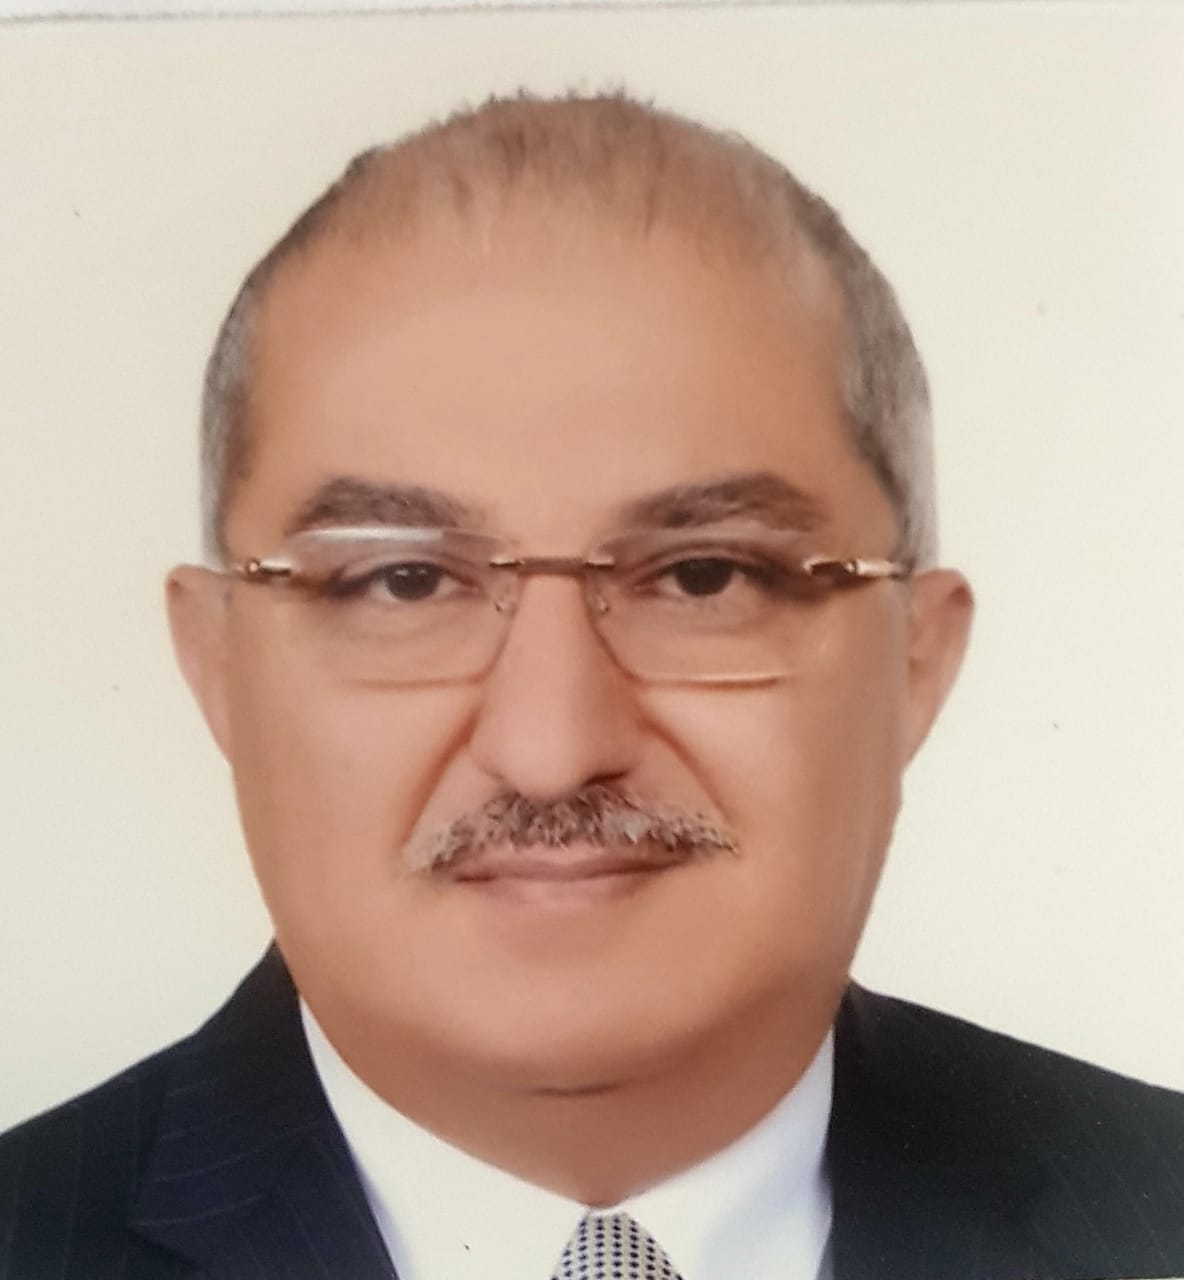 ProfTarek Abdalla Morsy El-Gammal